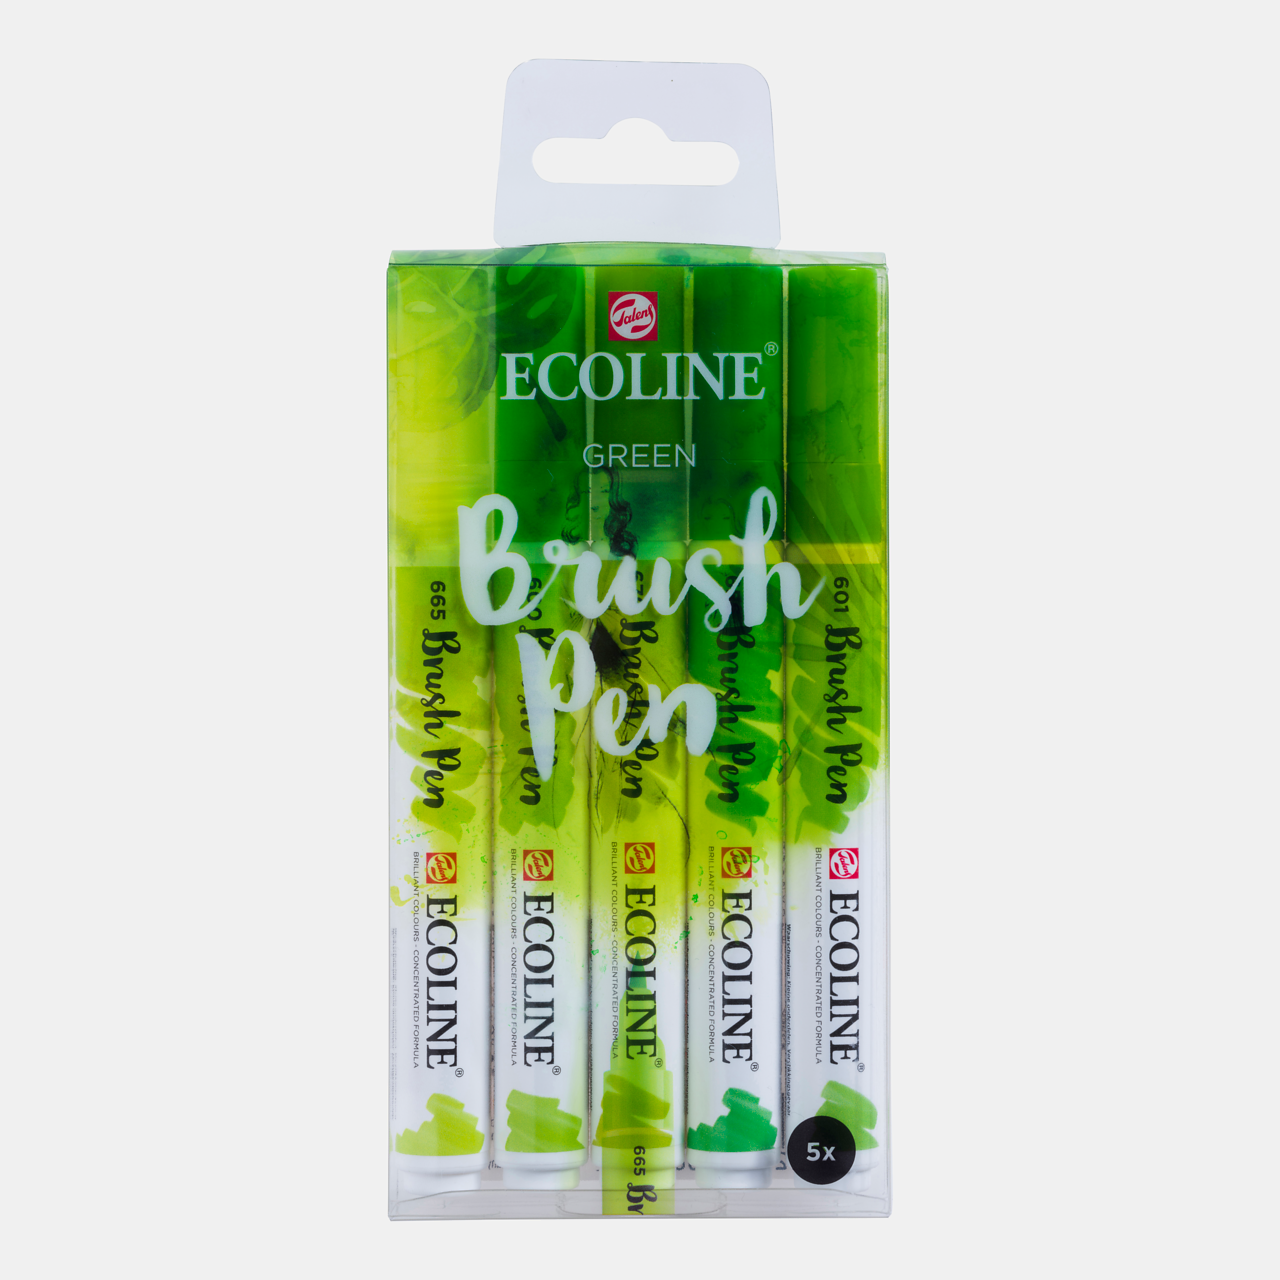 Ecoline Brushpennen Set van 5 Groen kleuren kopen? - Kunstburg.nl - Kunstburg